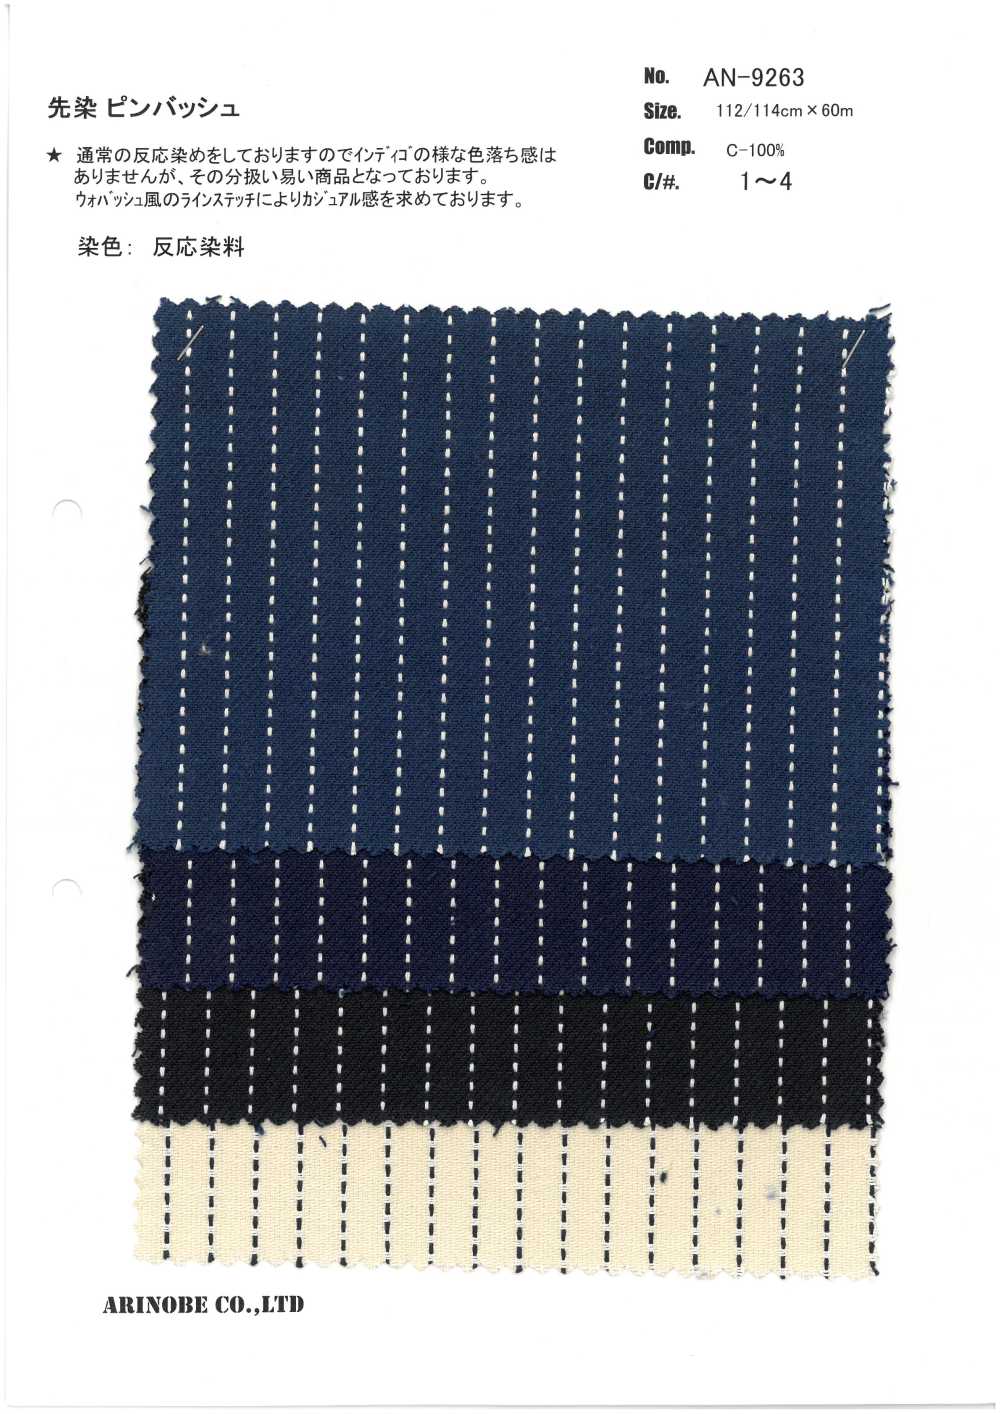 AN-9263 Pin Bash Teñido En Hilo[Fabrica Textil] ARINOBE CO., LTD.